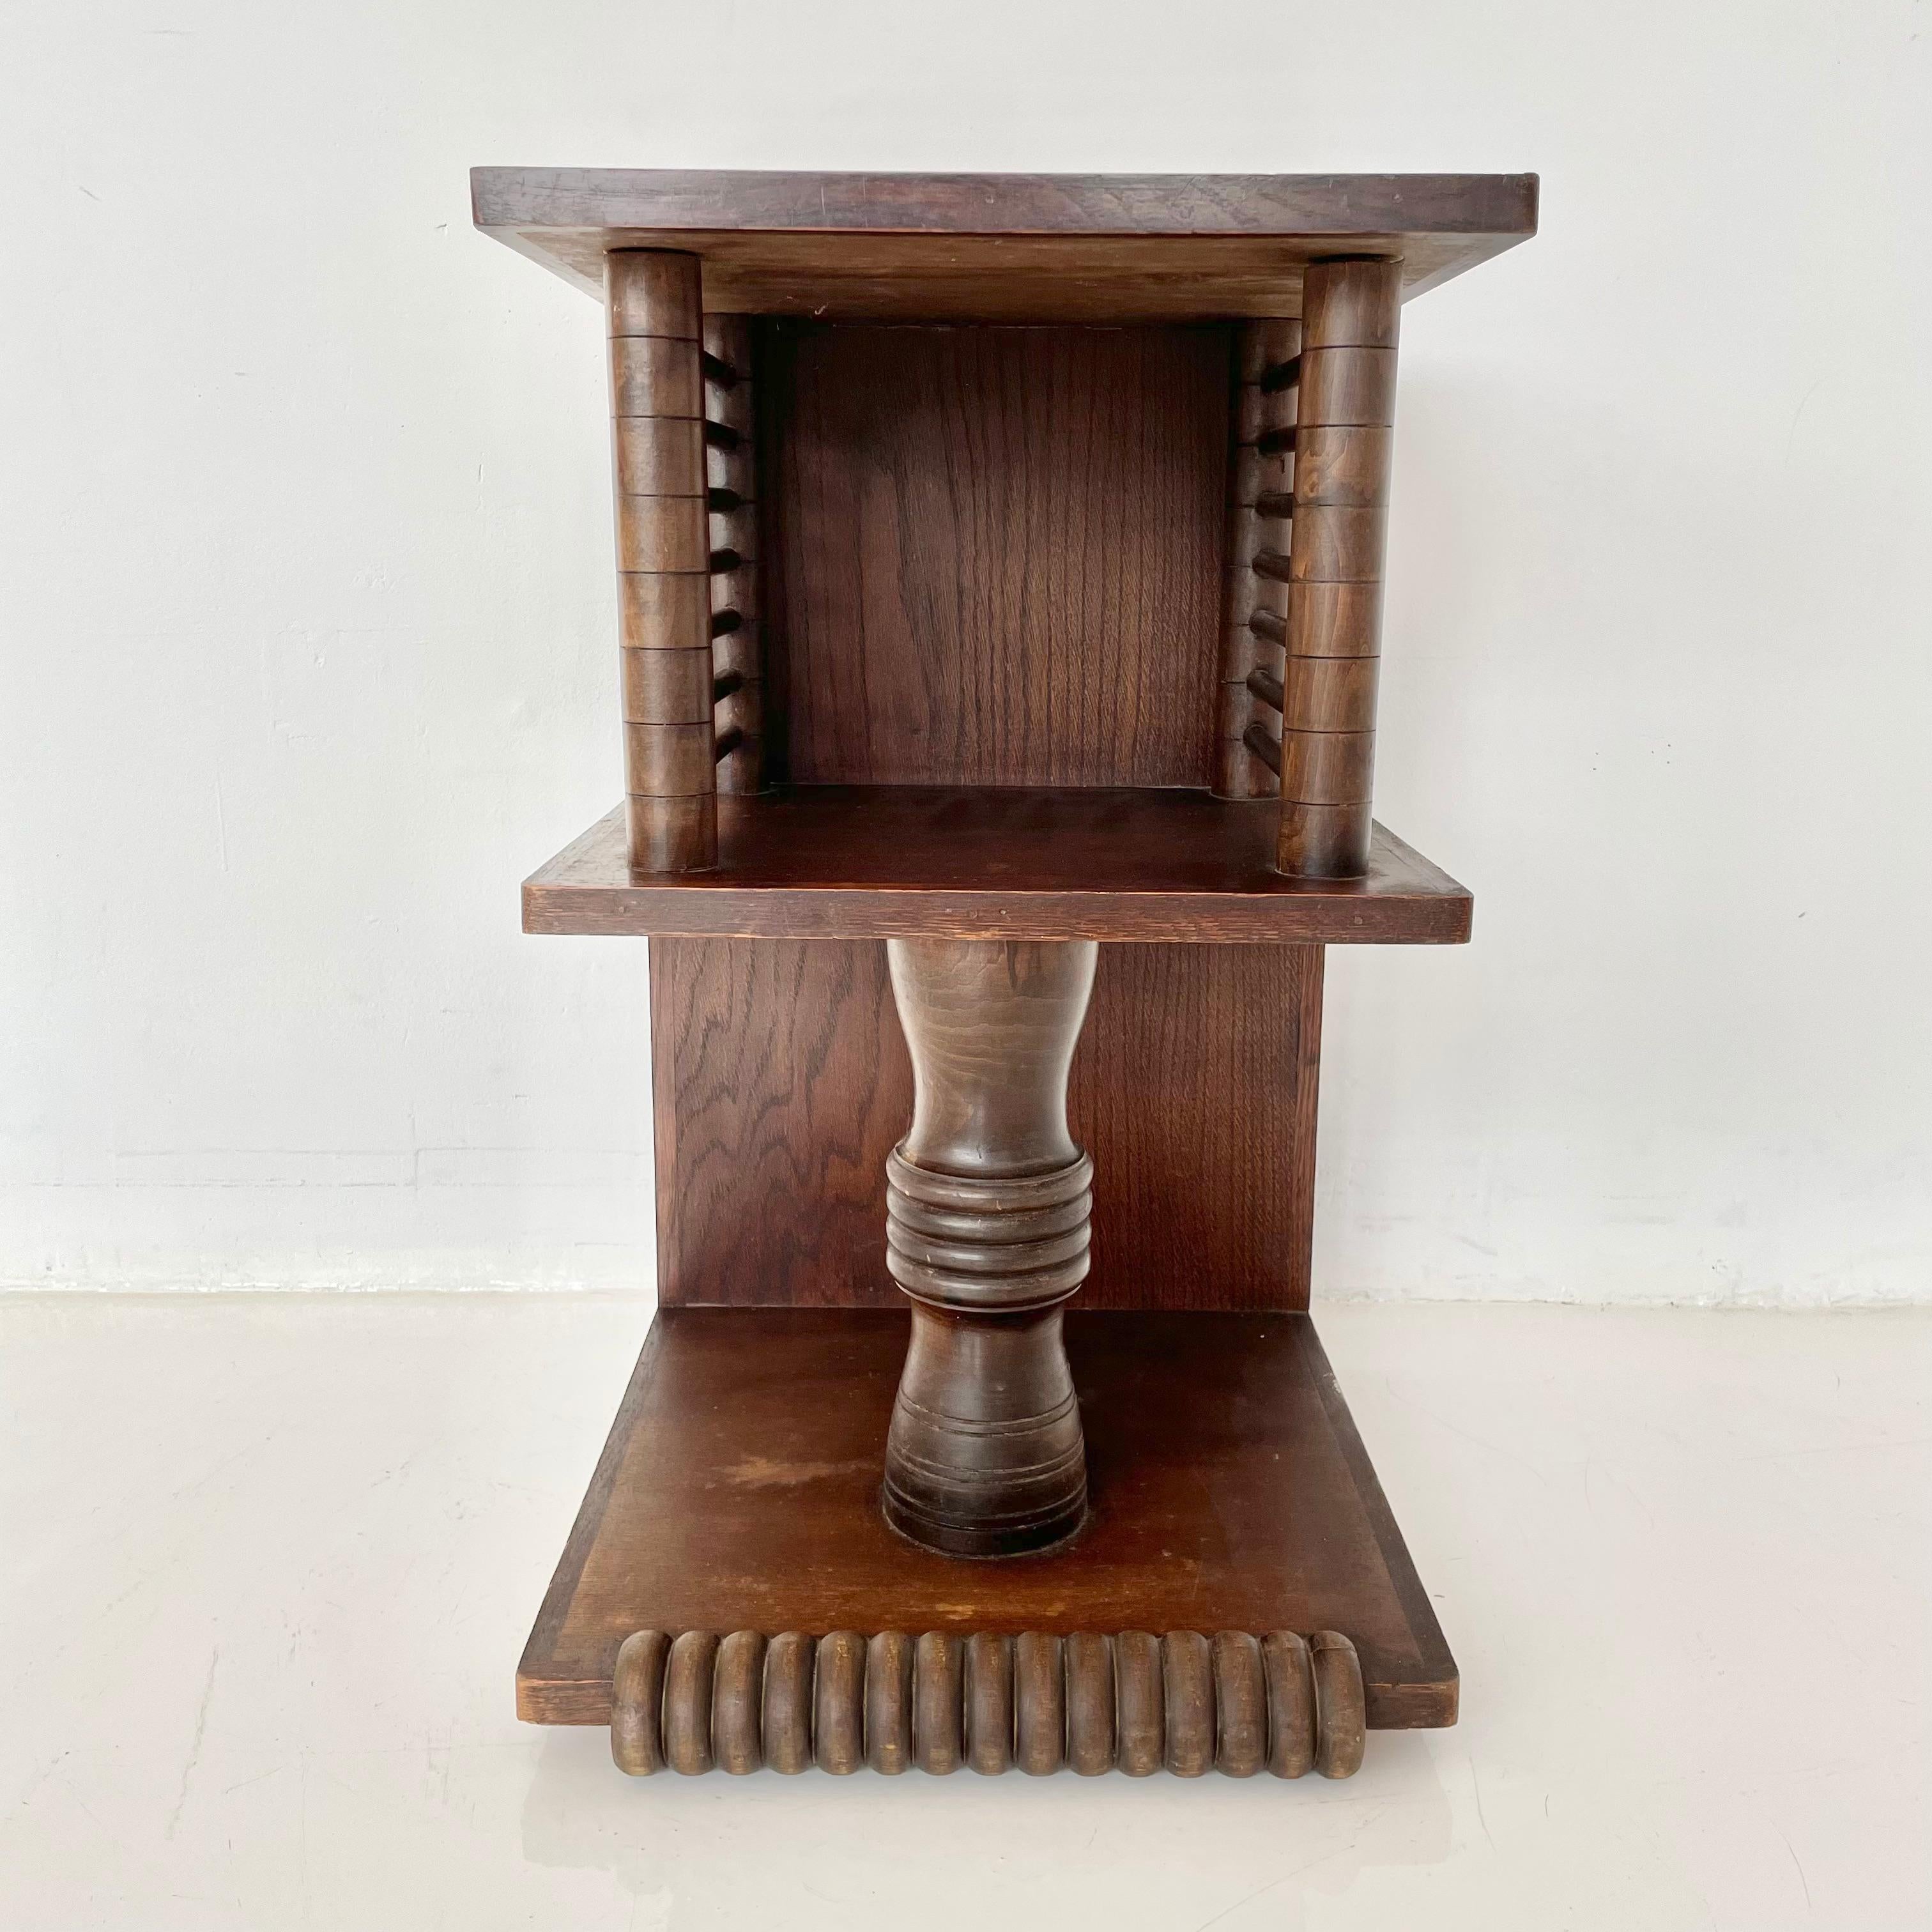 Charles Dudouyt (1885-1946) Table basse française, vers 1930.
Fortement influencées par l'art africain, ces tables richement sculptées marquent un exode esthétique de l'Art déco vers les formes abstraites audacieuses de Picasso et du mouvement